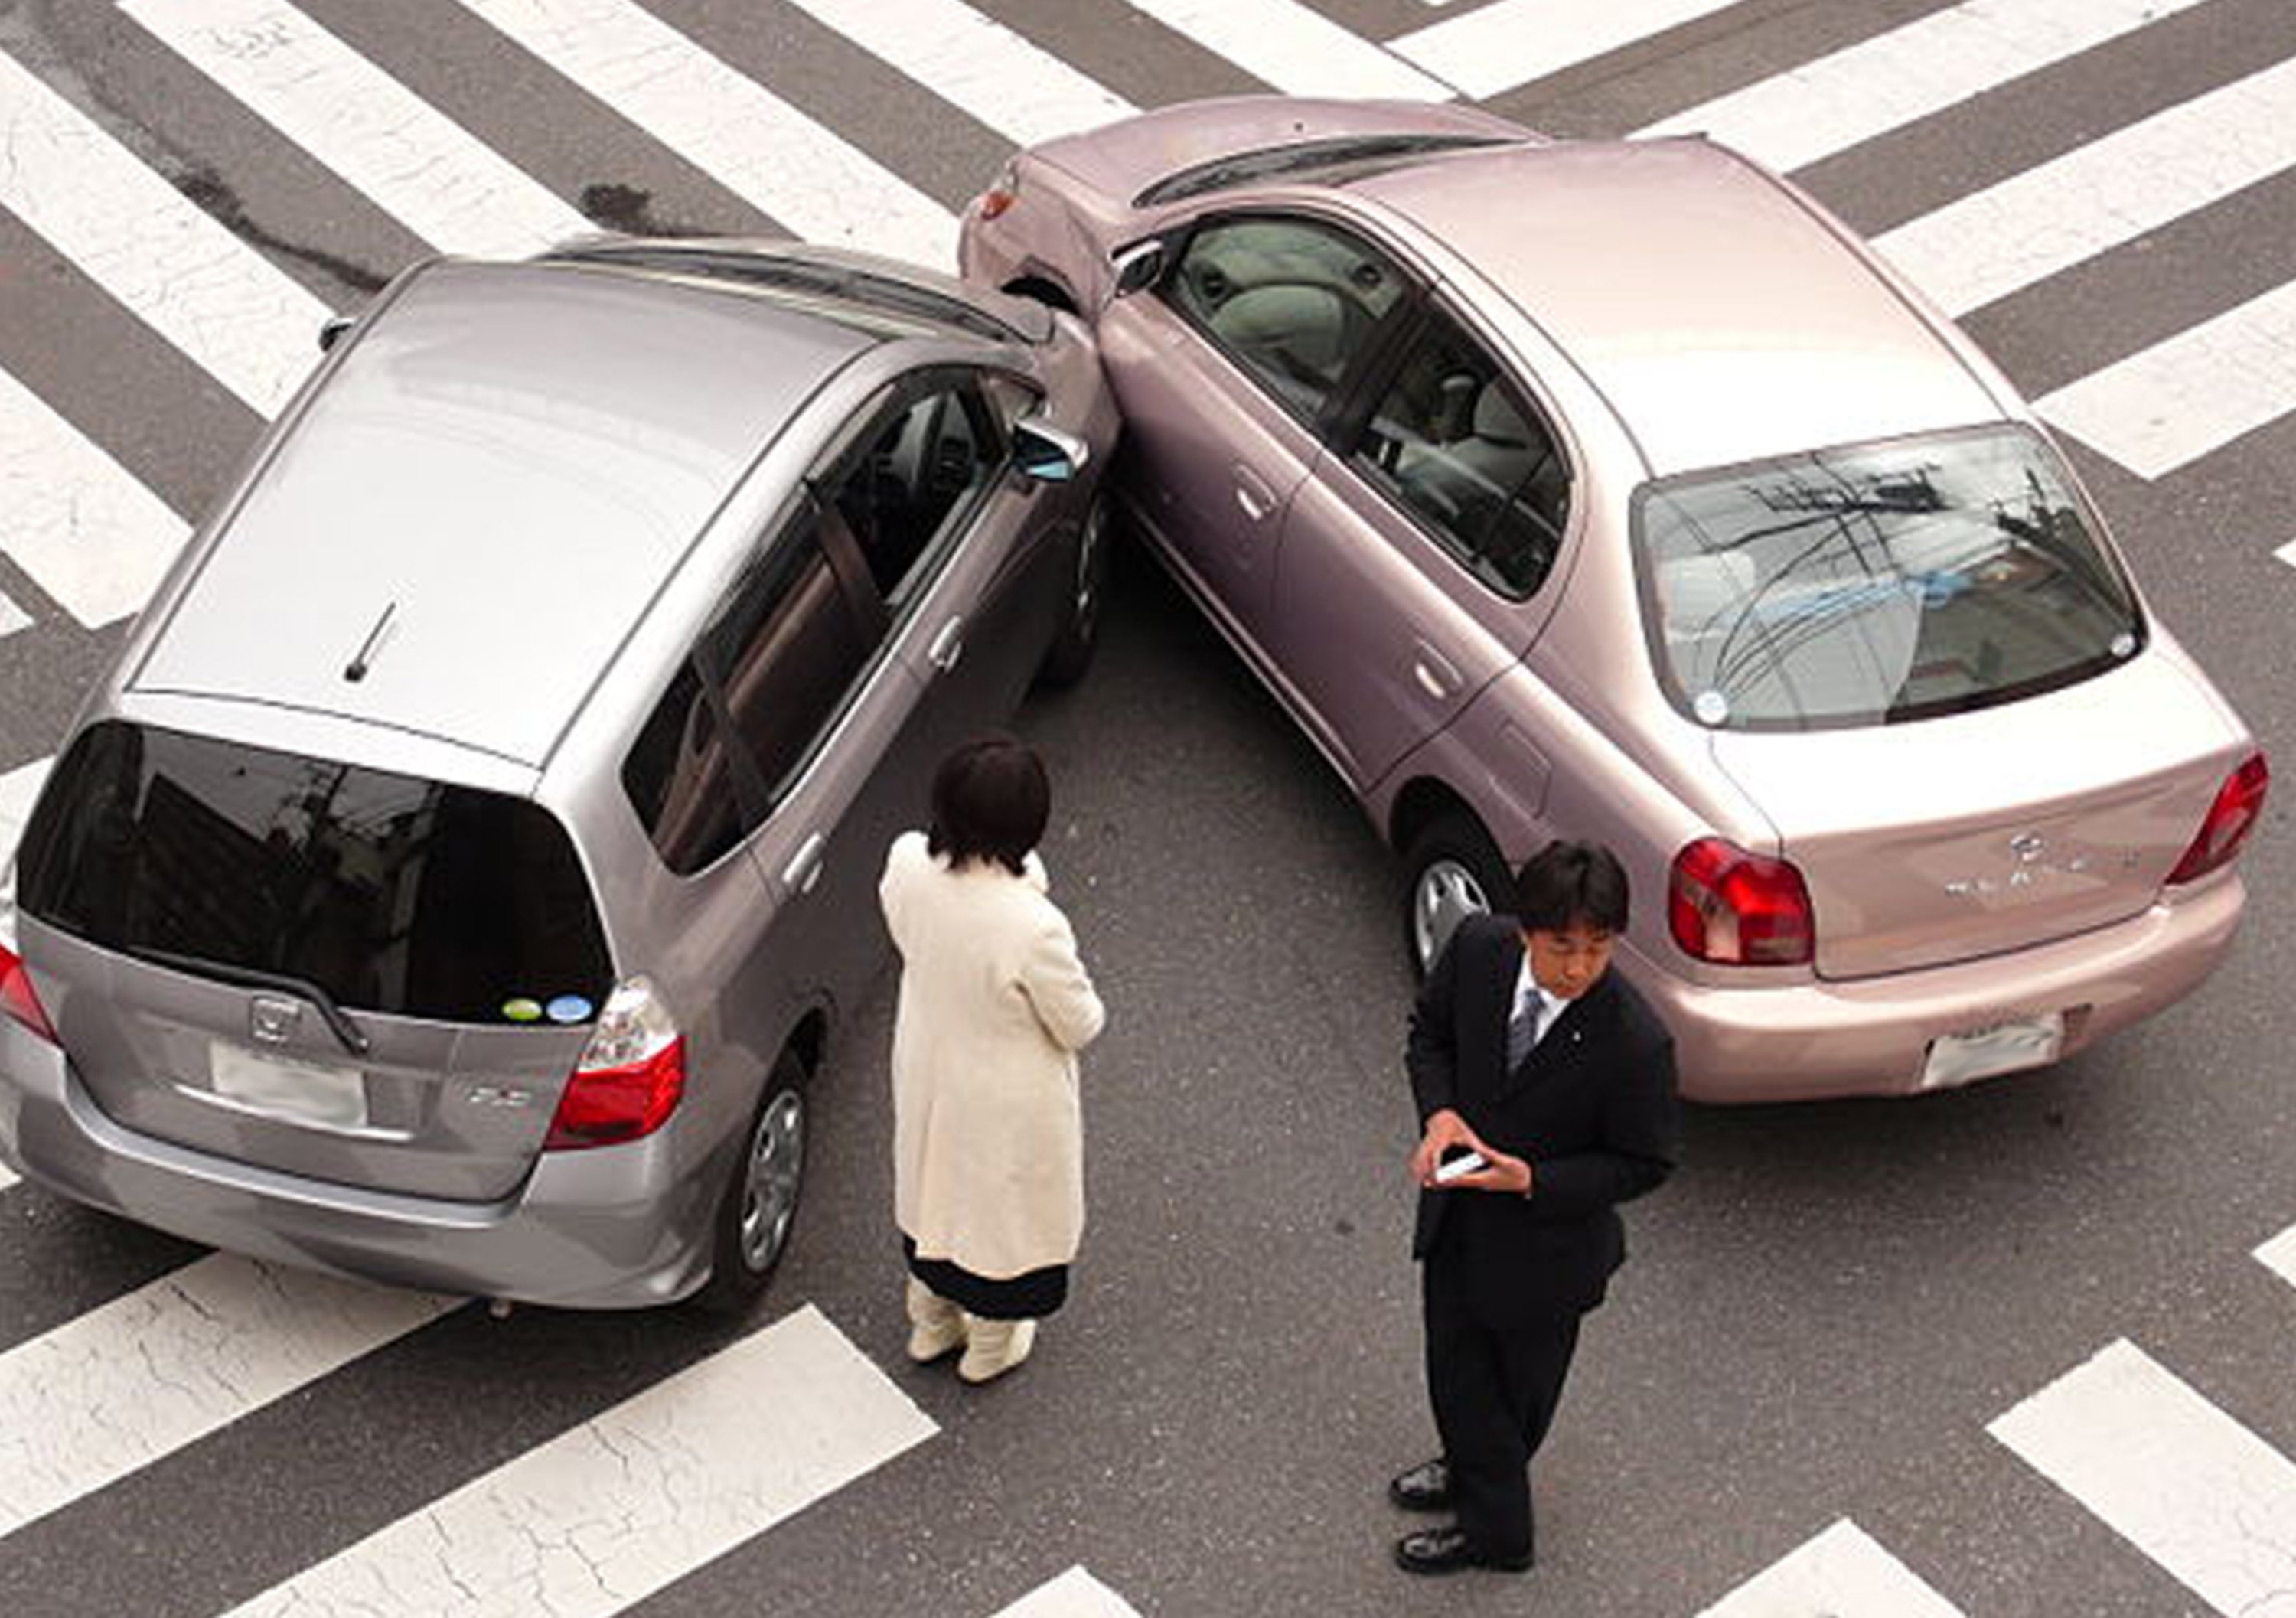 Incidente con veicolo senza assicurazione, ecco cosa fare